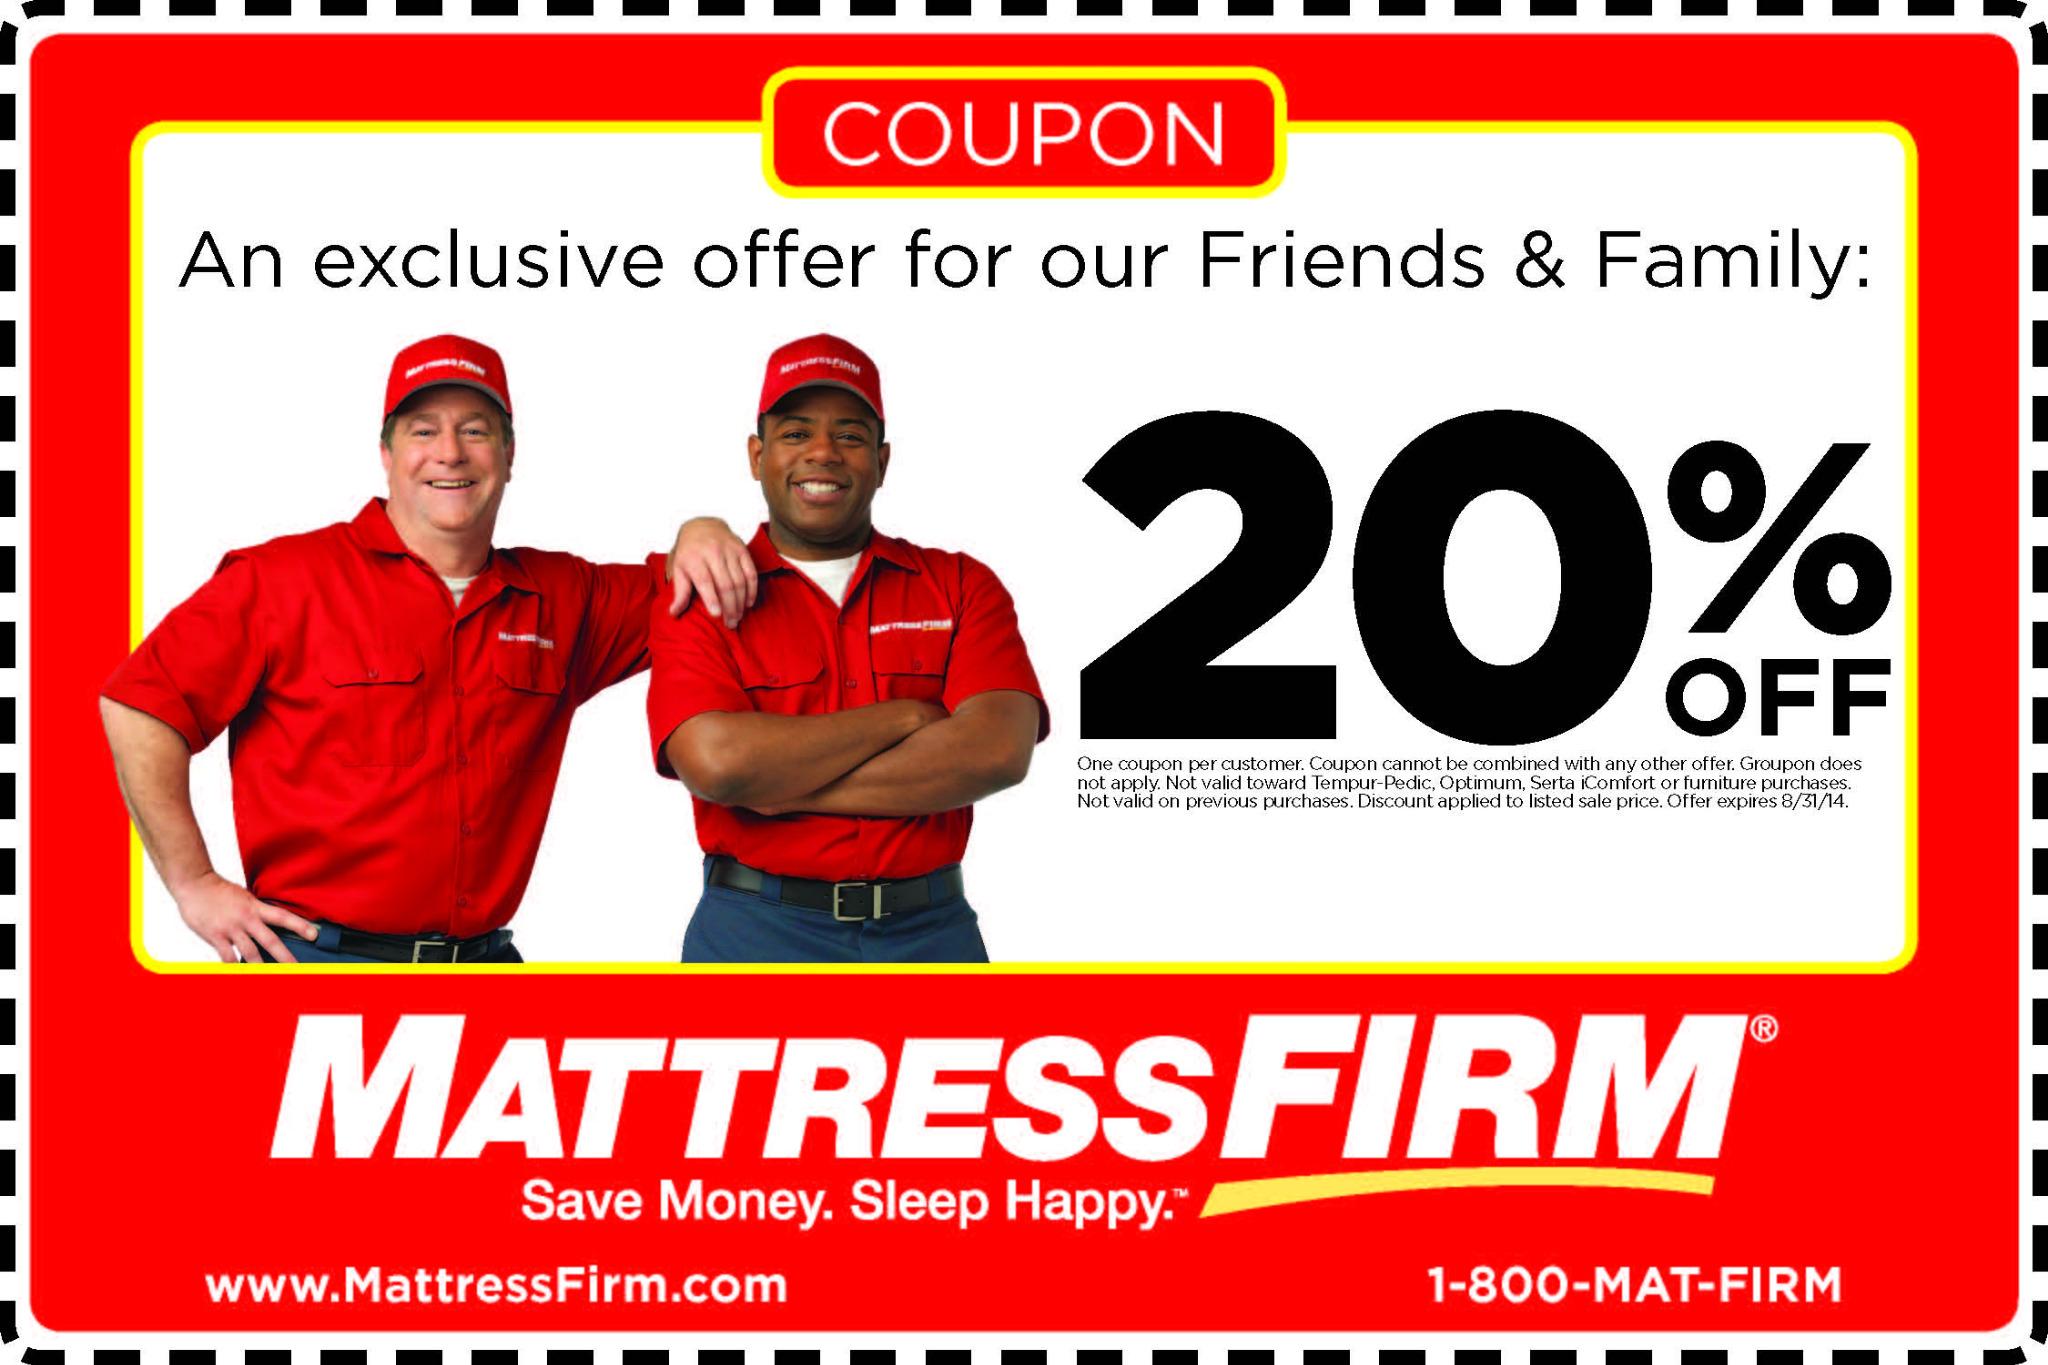 mattress firm coupons online